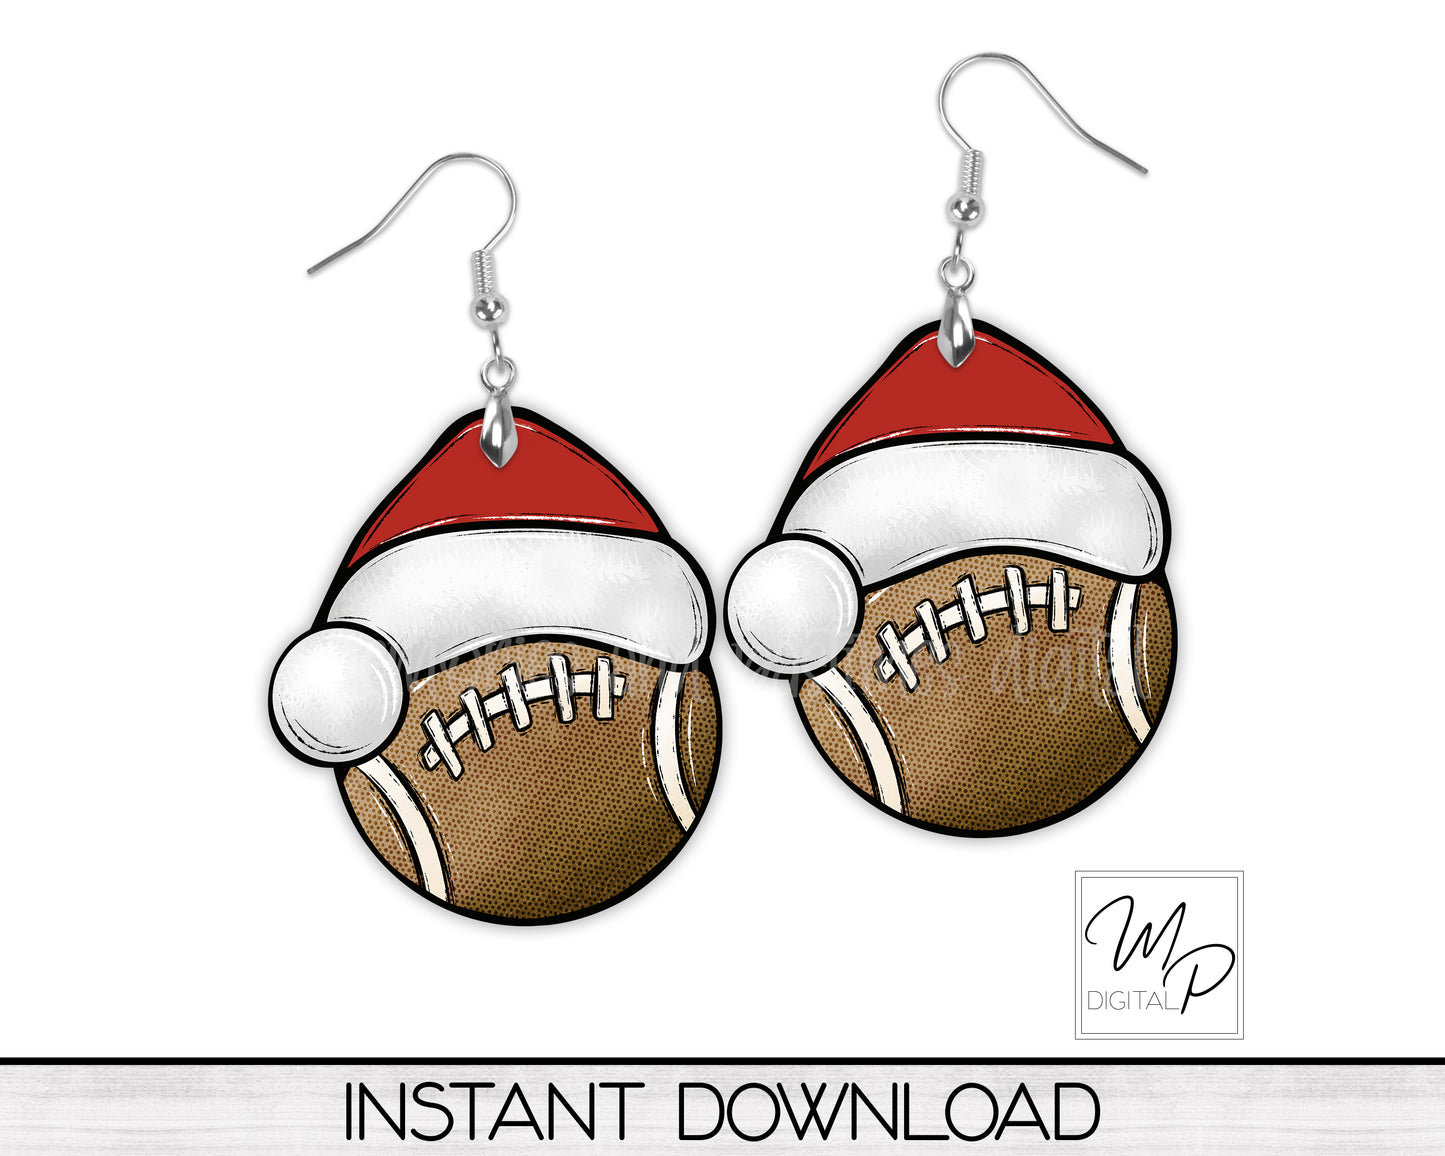 Christmas Football Santa Hat PNG Design for Sublimation, Digital Download